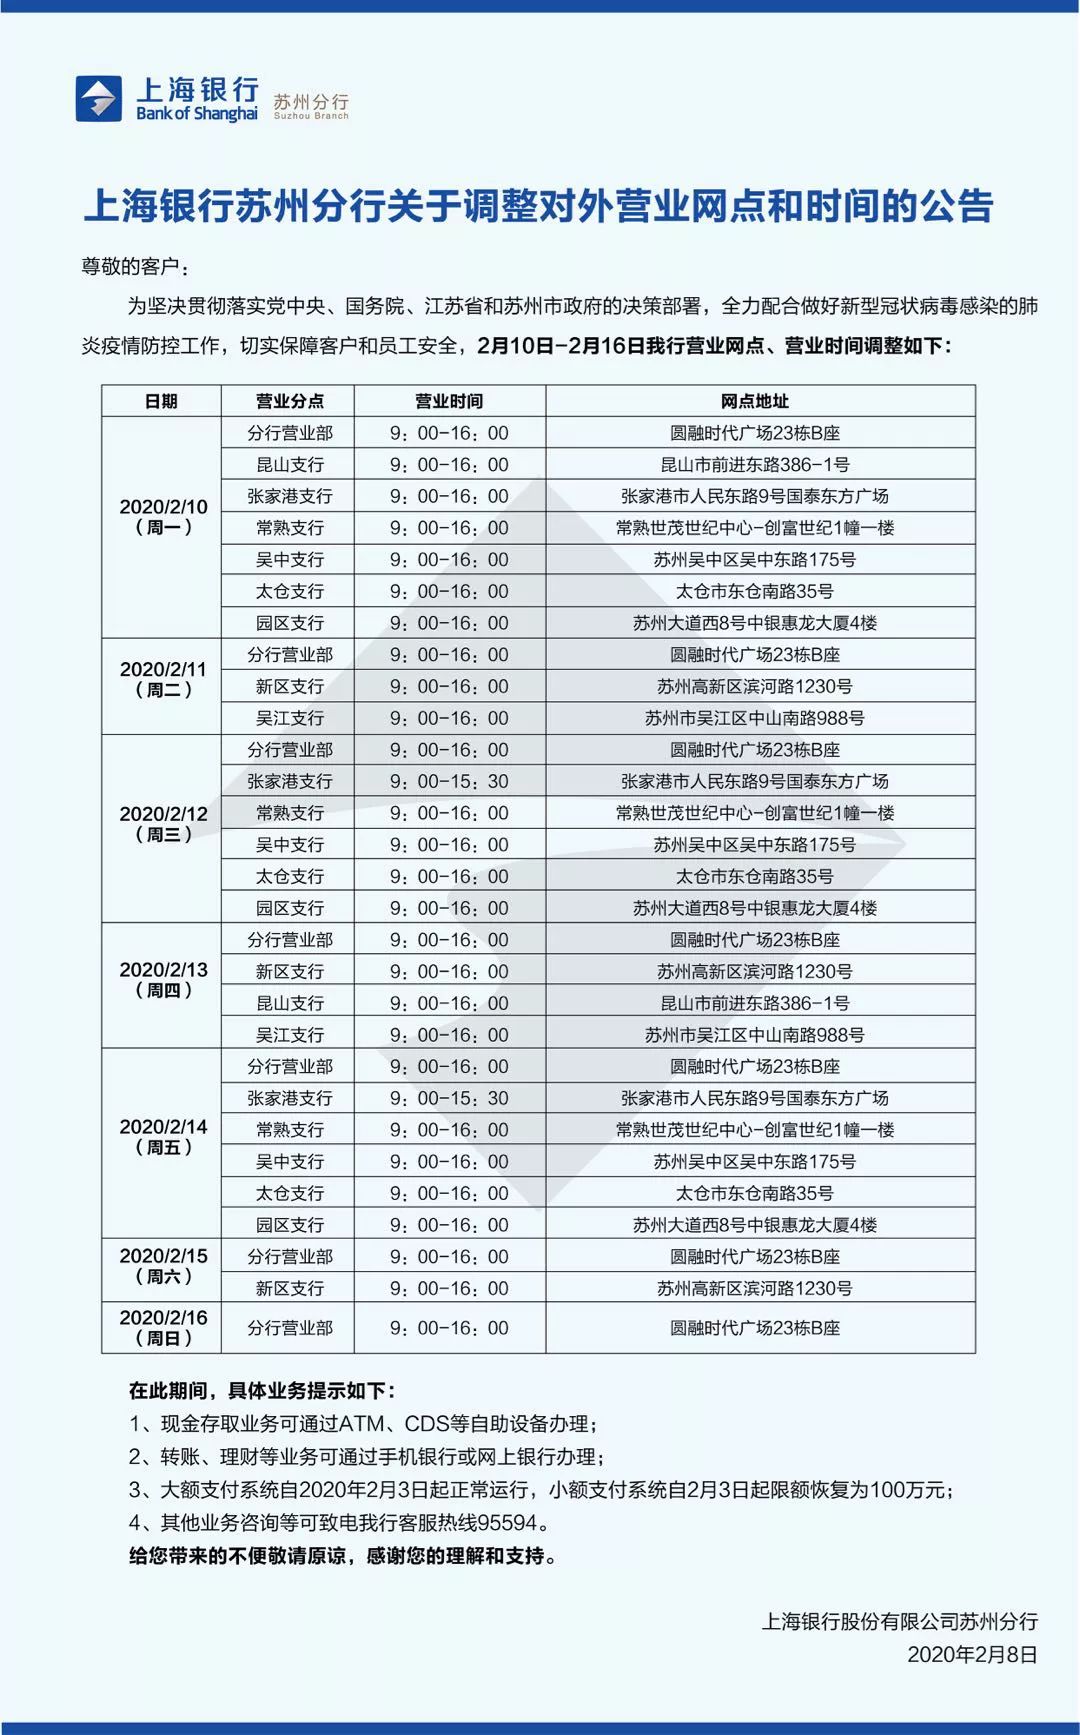 上海银行苏州分行关于调整对外营业网点和时间的公告 